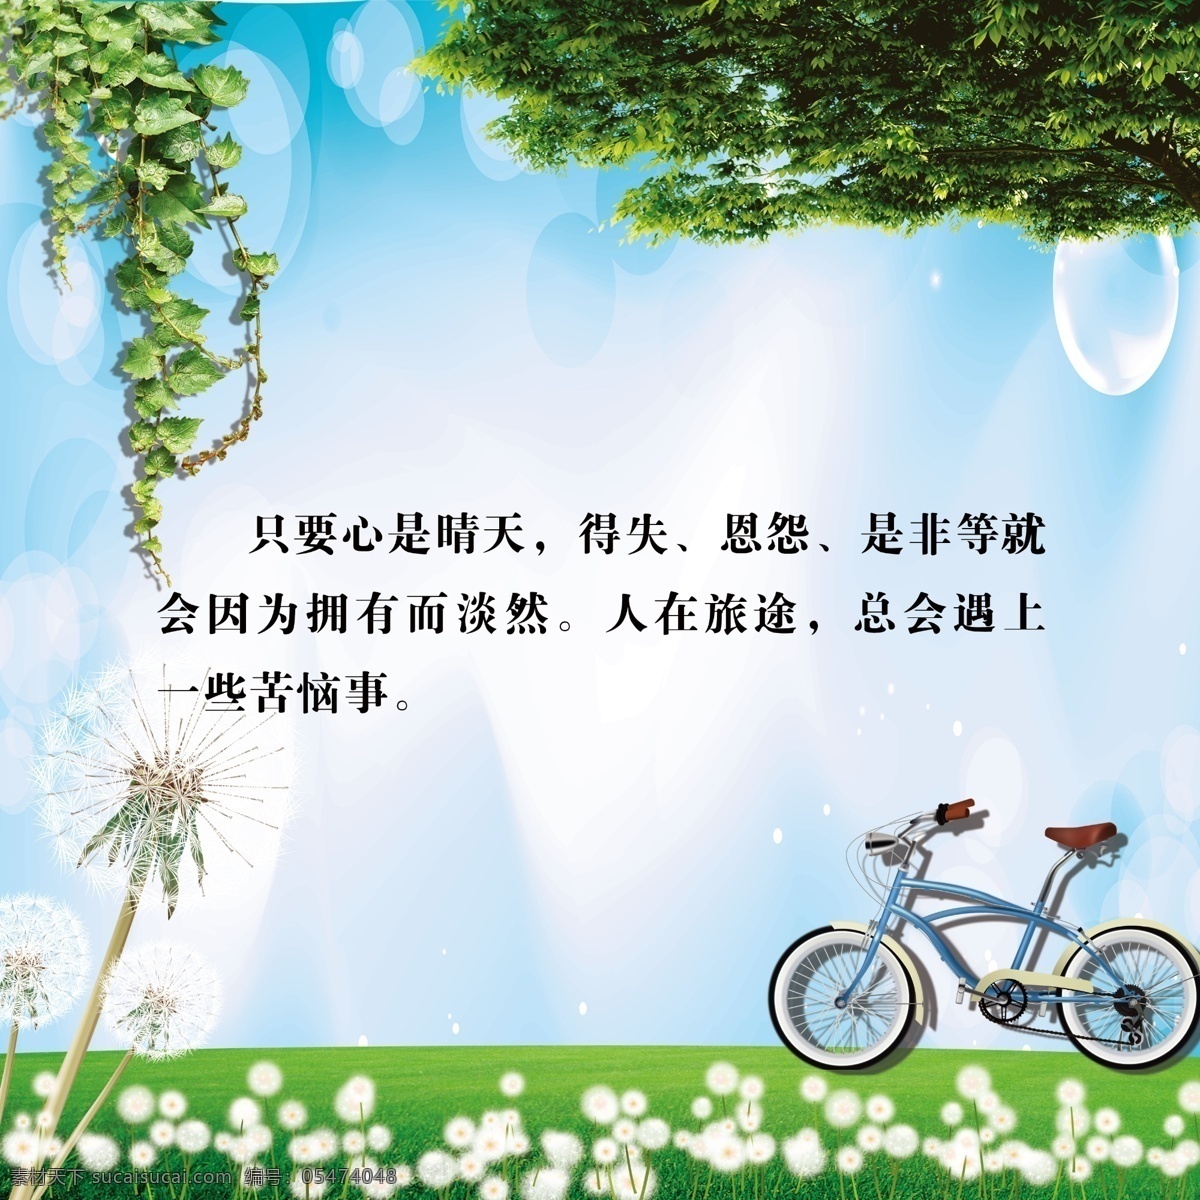 学校展板 模版下载 励志 单车 自行车 树 草 花 蒲公英 气泡 蓝天 白云 阳光 草地 草丛 展板模板 广告设计模板 源文件